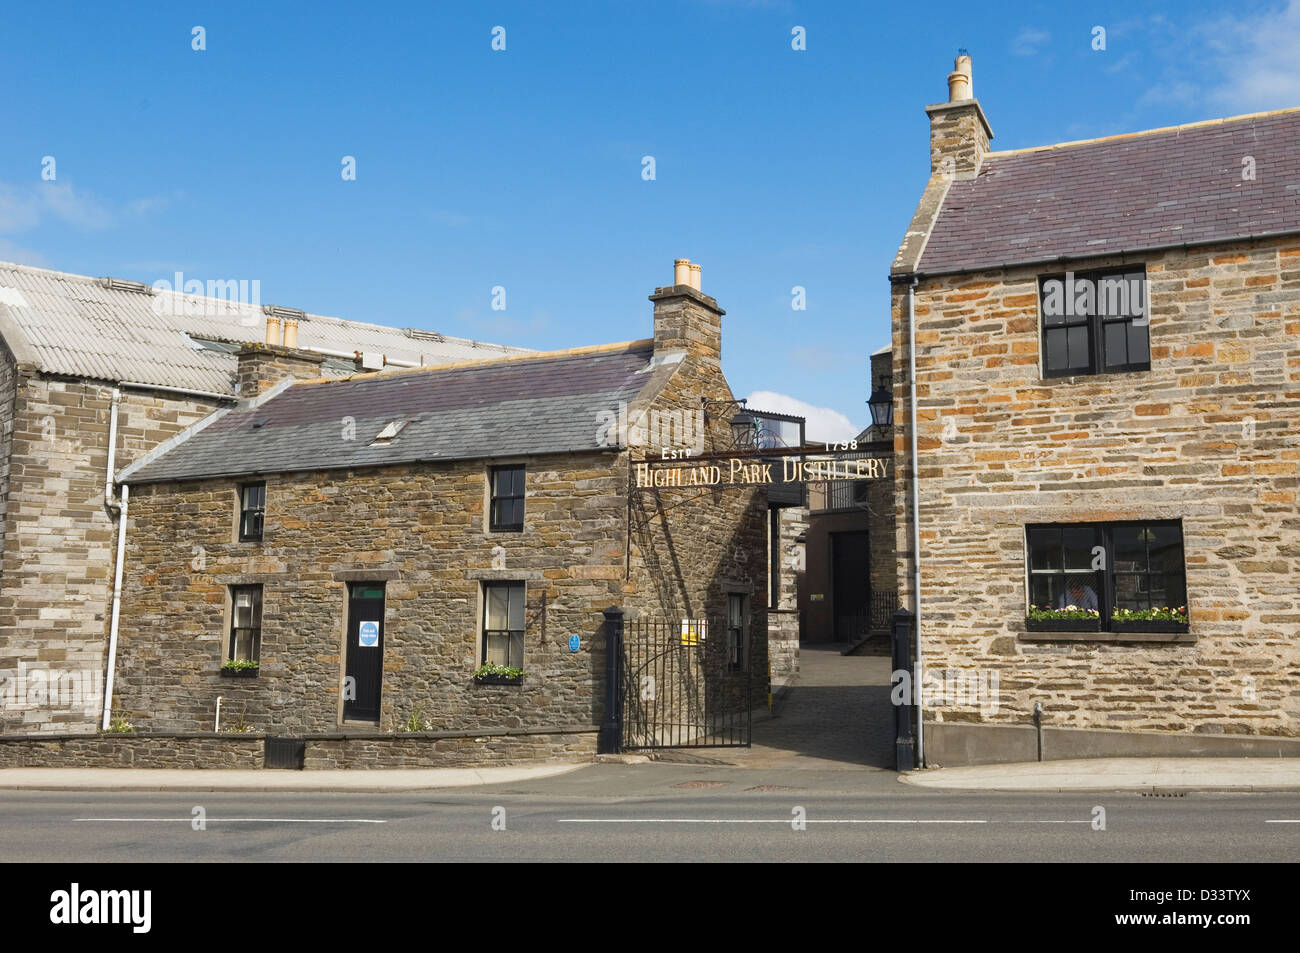 Highland Park whisky distillery, Orkney Islands, Scotland, UK. Stock Photo